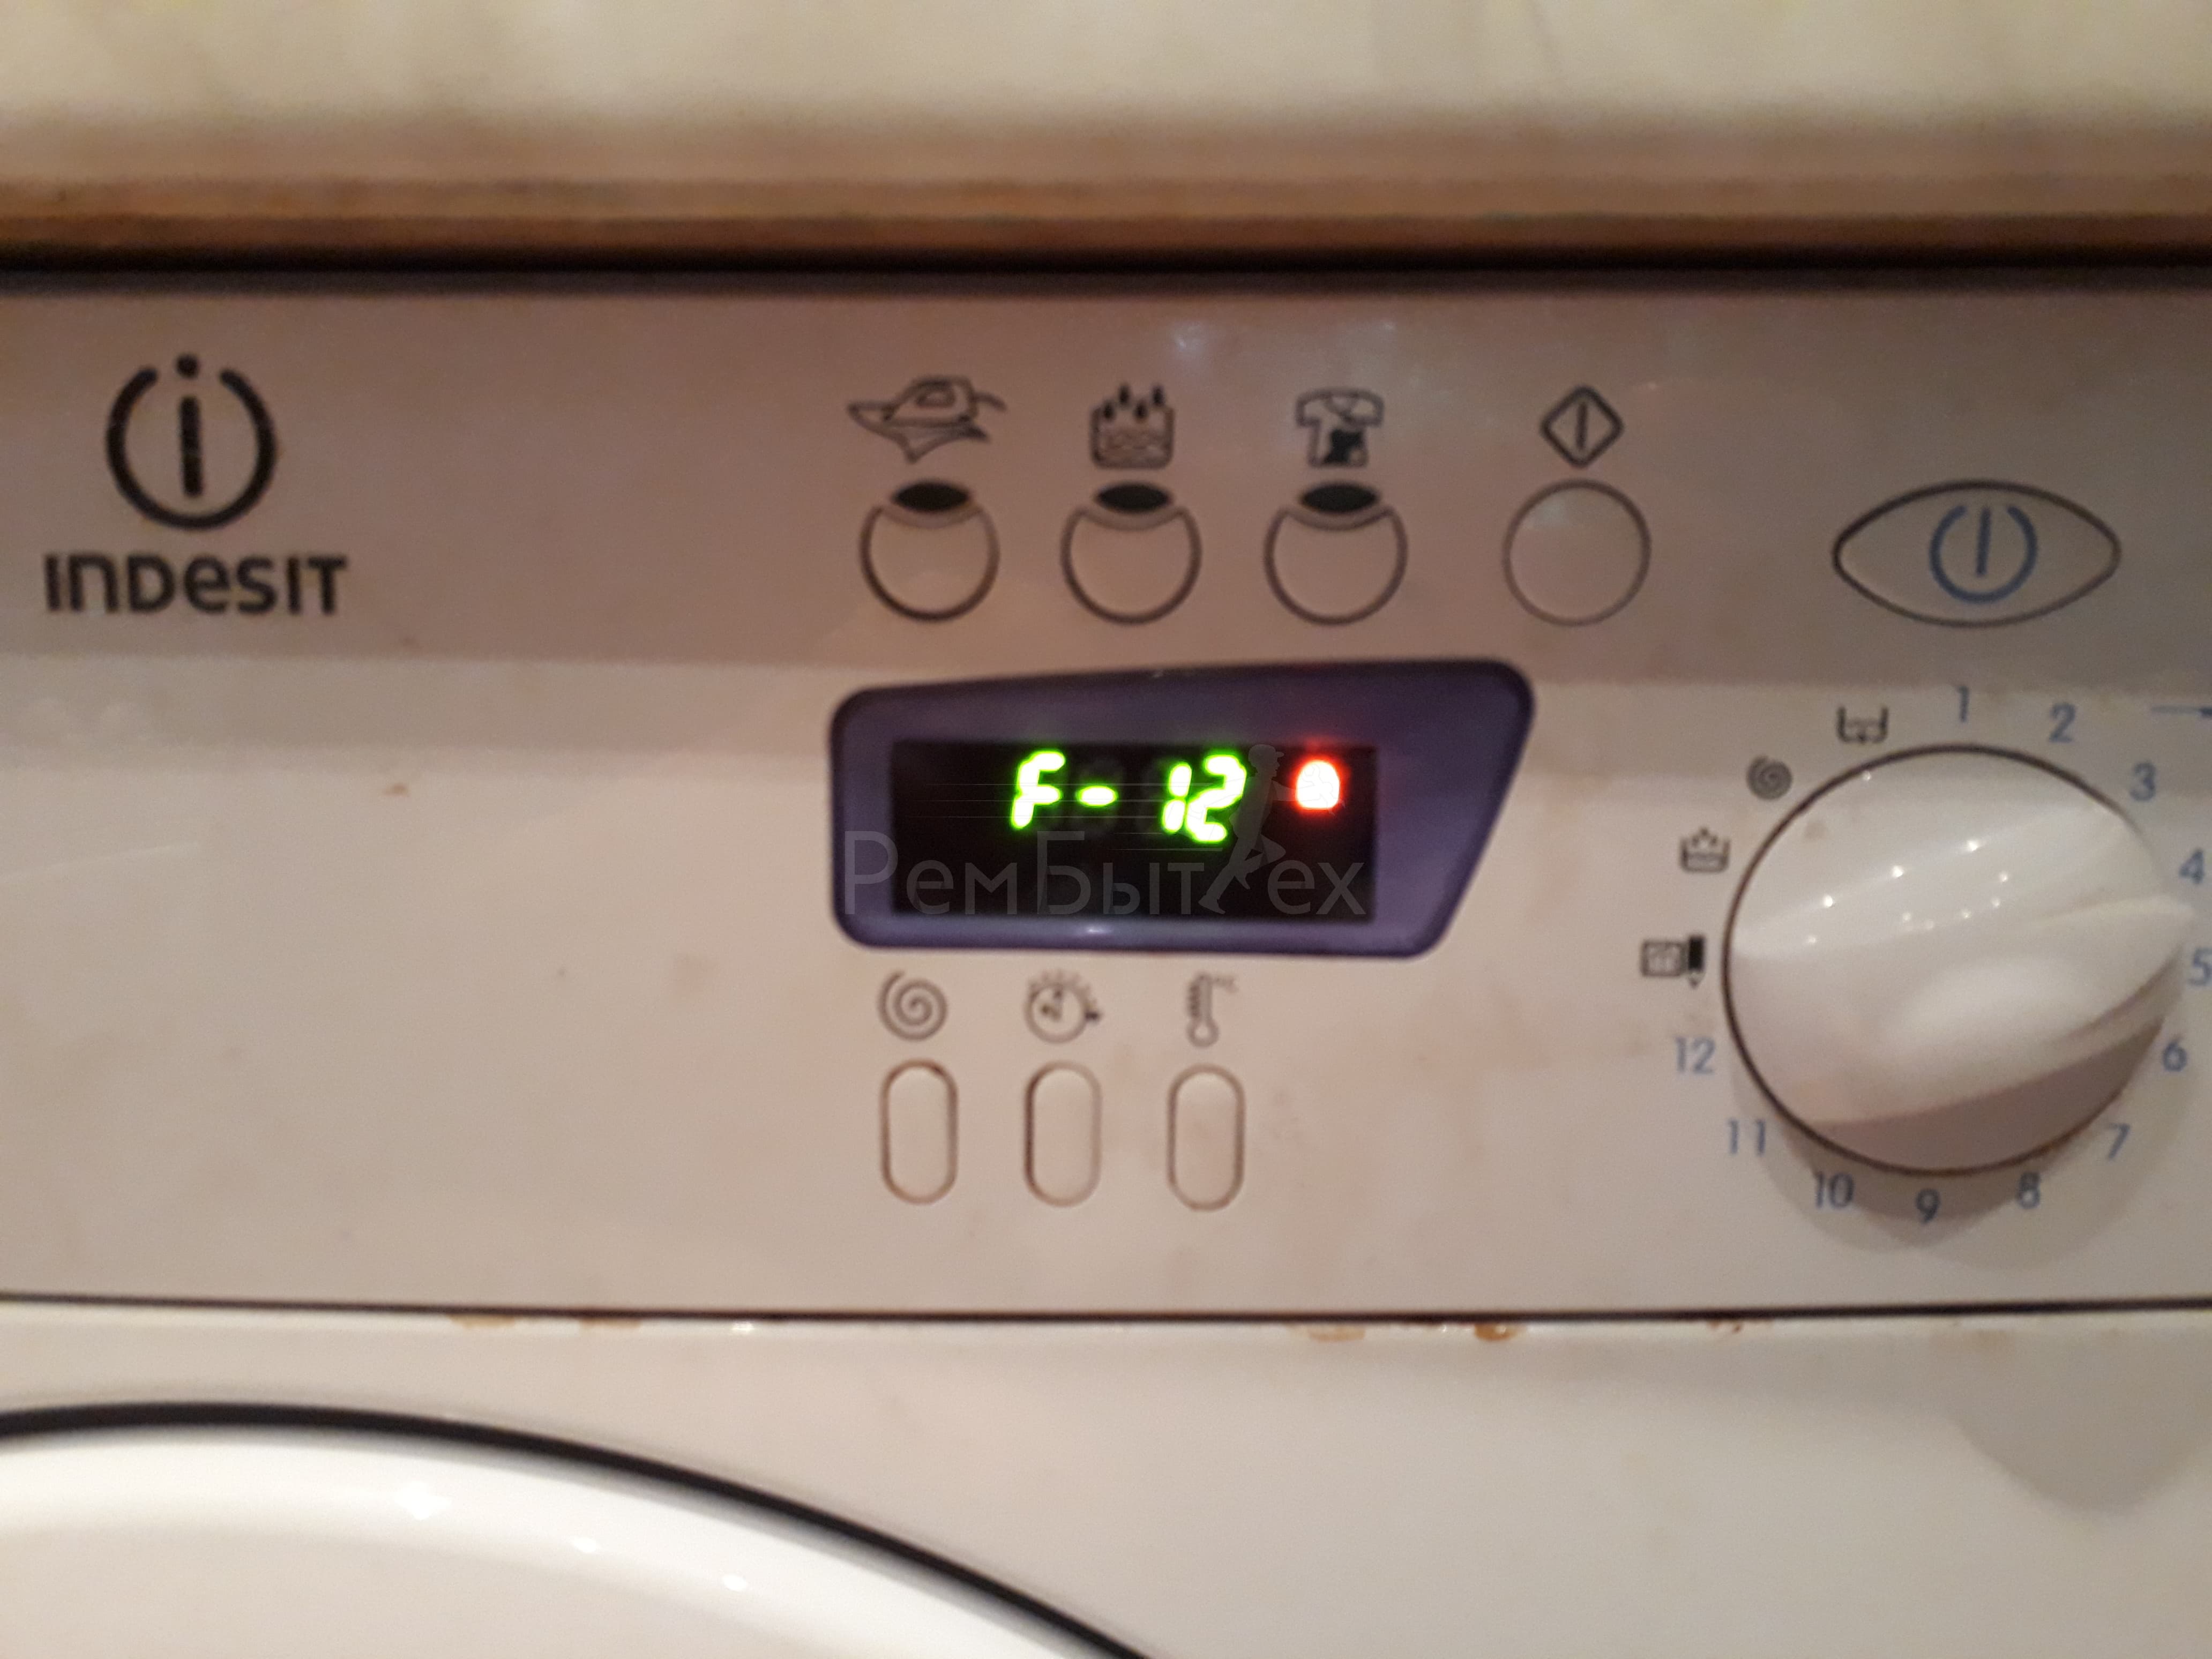 Машинка стиральная Индезит ошибка f12